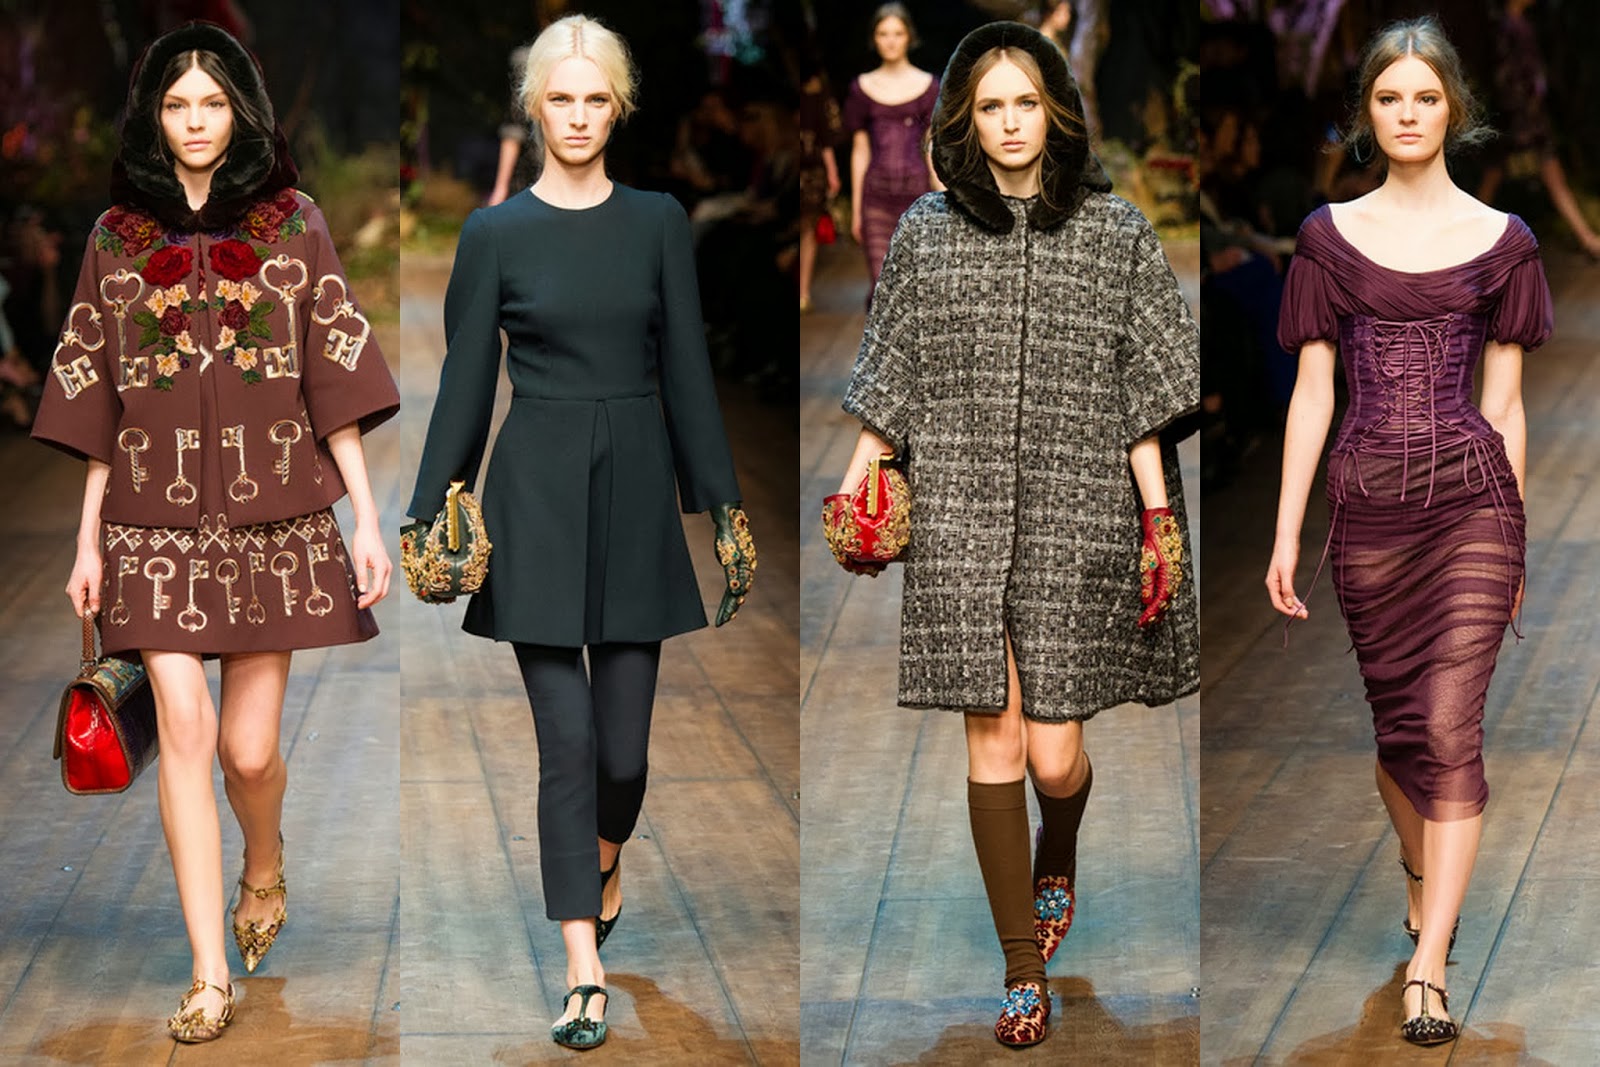 I AM FASHION !!!: Dolce & Gabbana Fall/Winter 2014 Womenswear